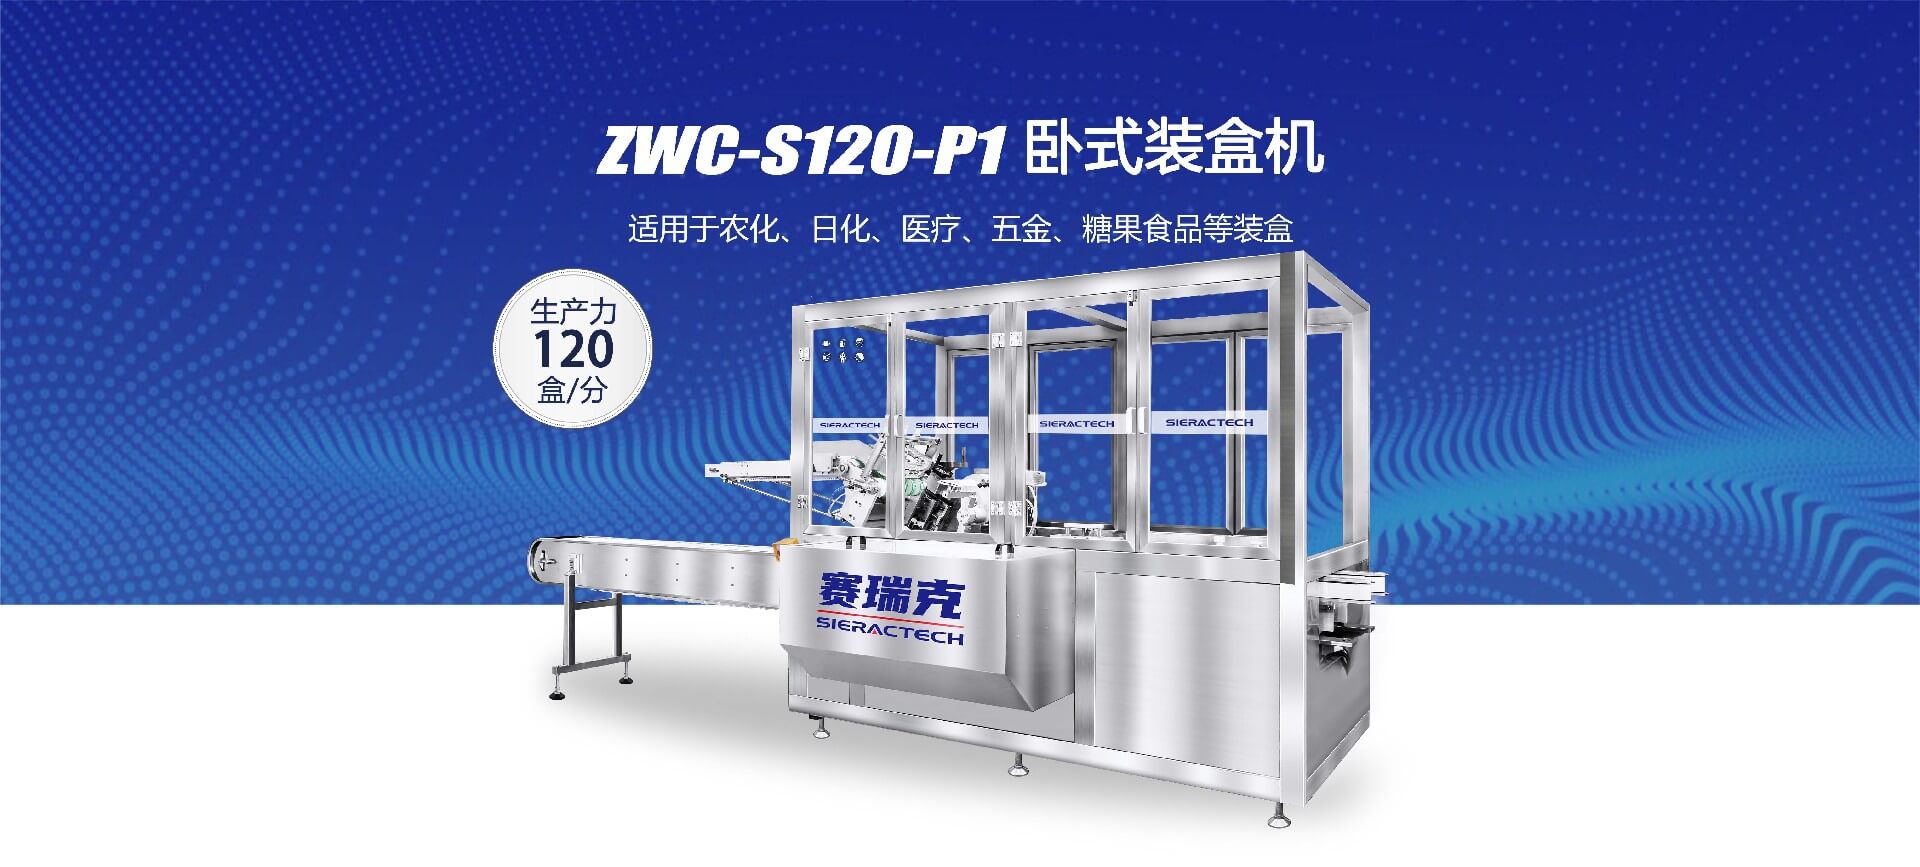 ZWC-S120-P1全自动卧式装盒